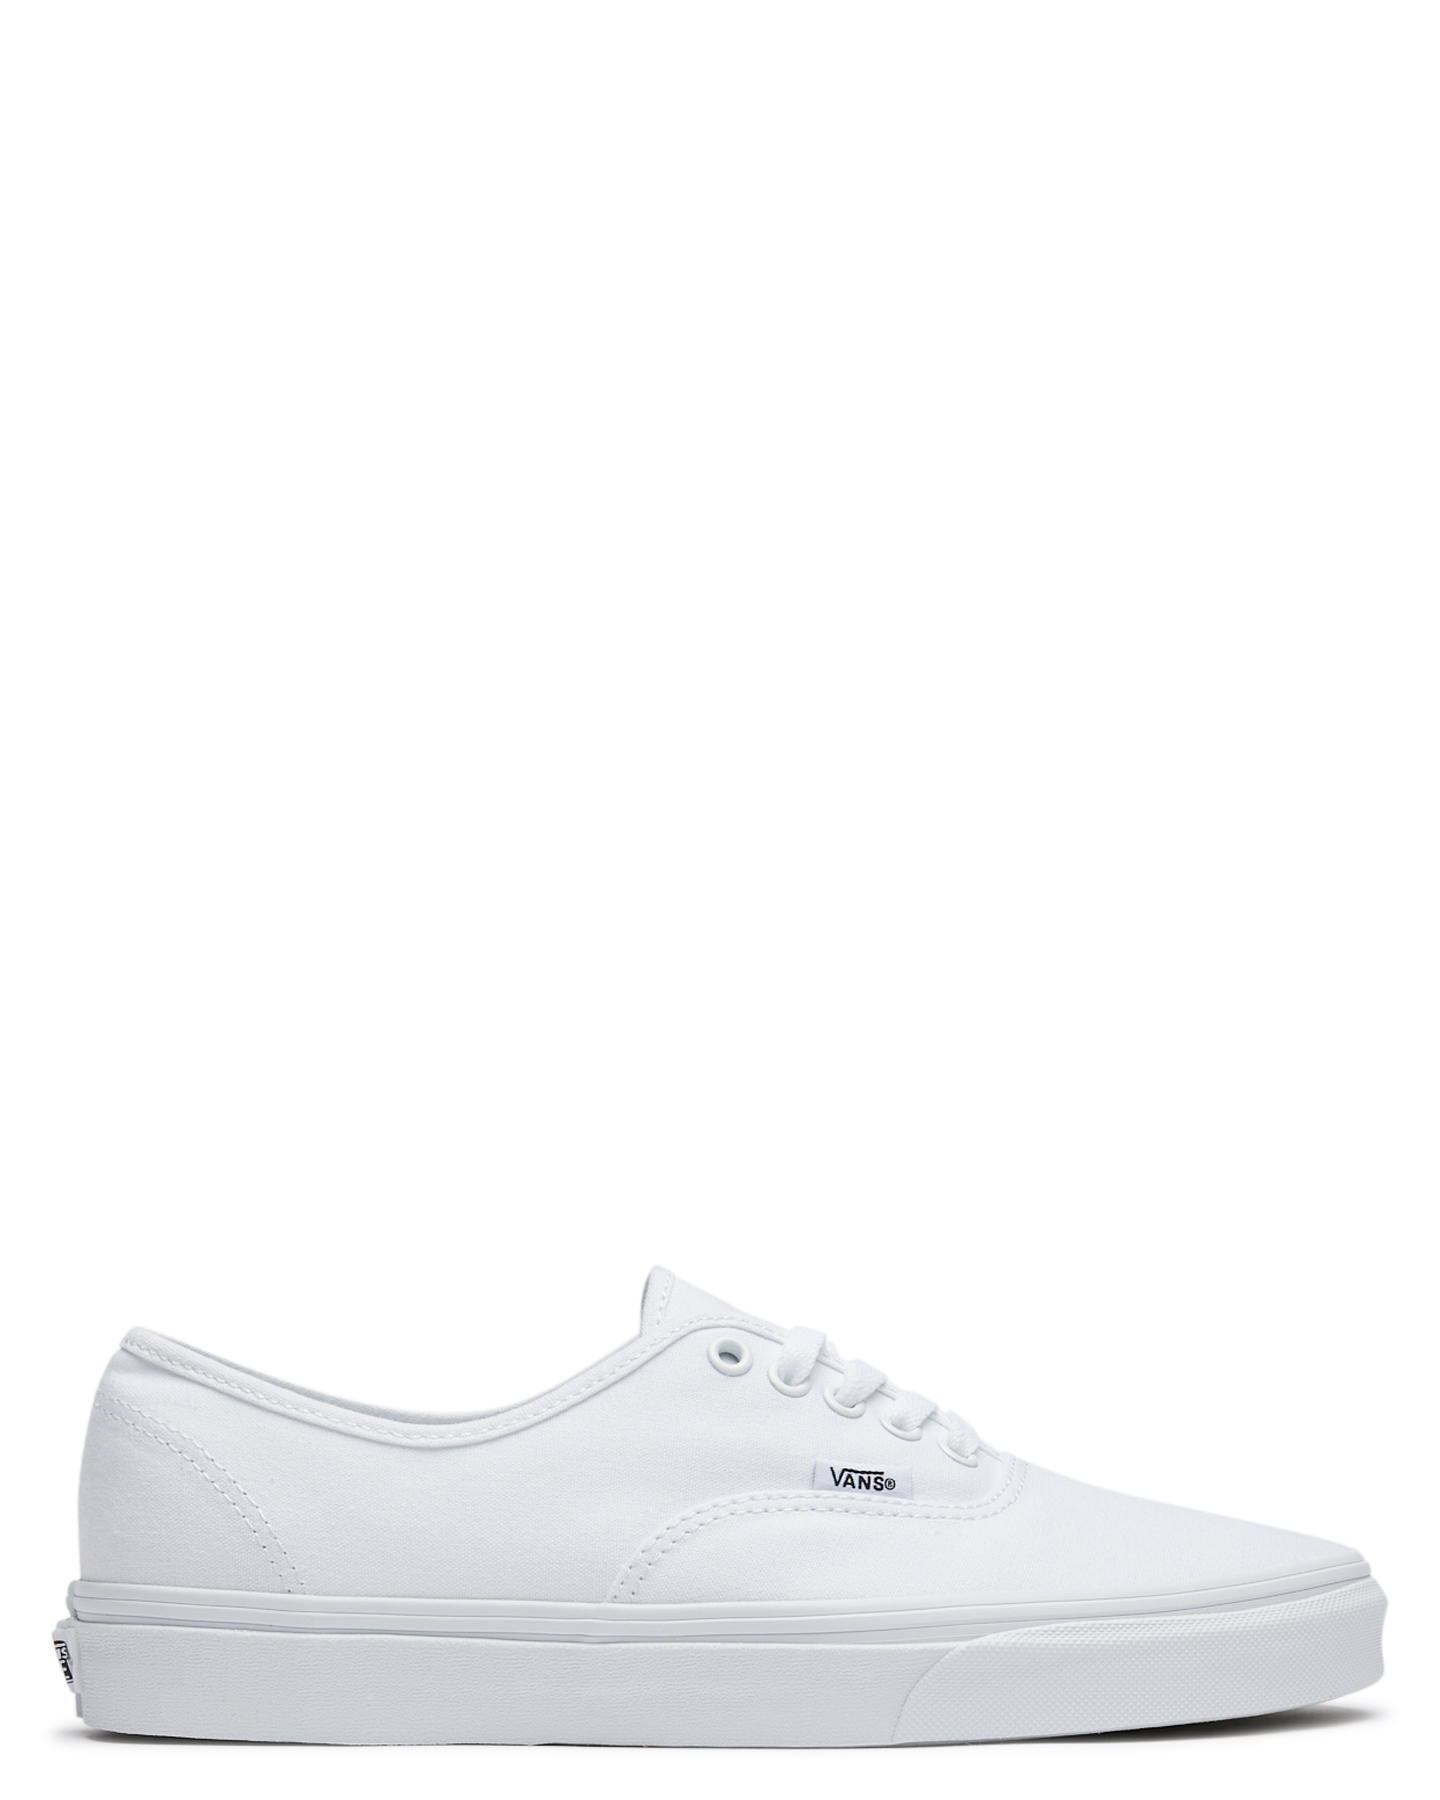 Vans Mens Authentic Shoe - True White 